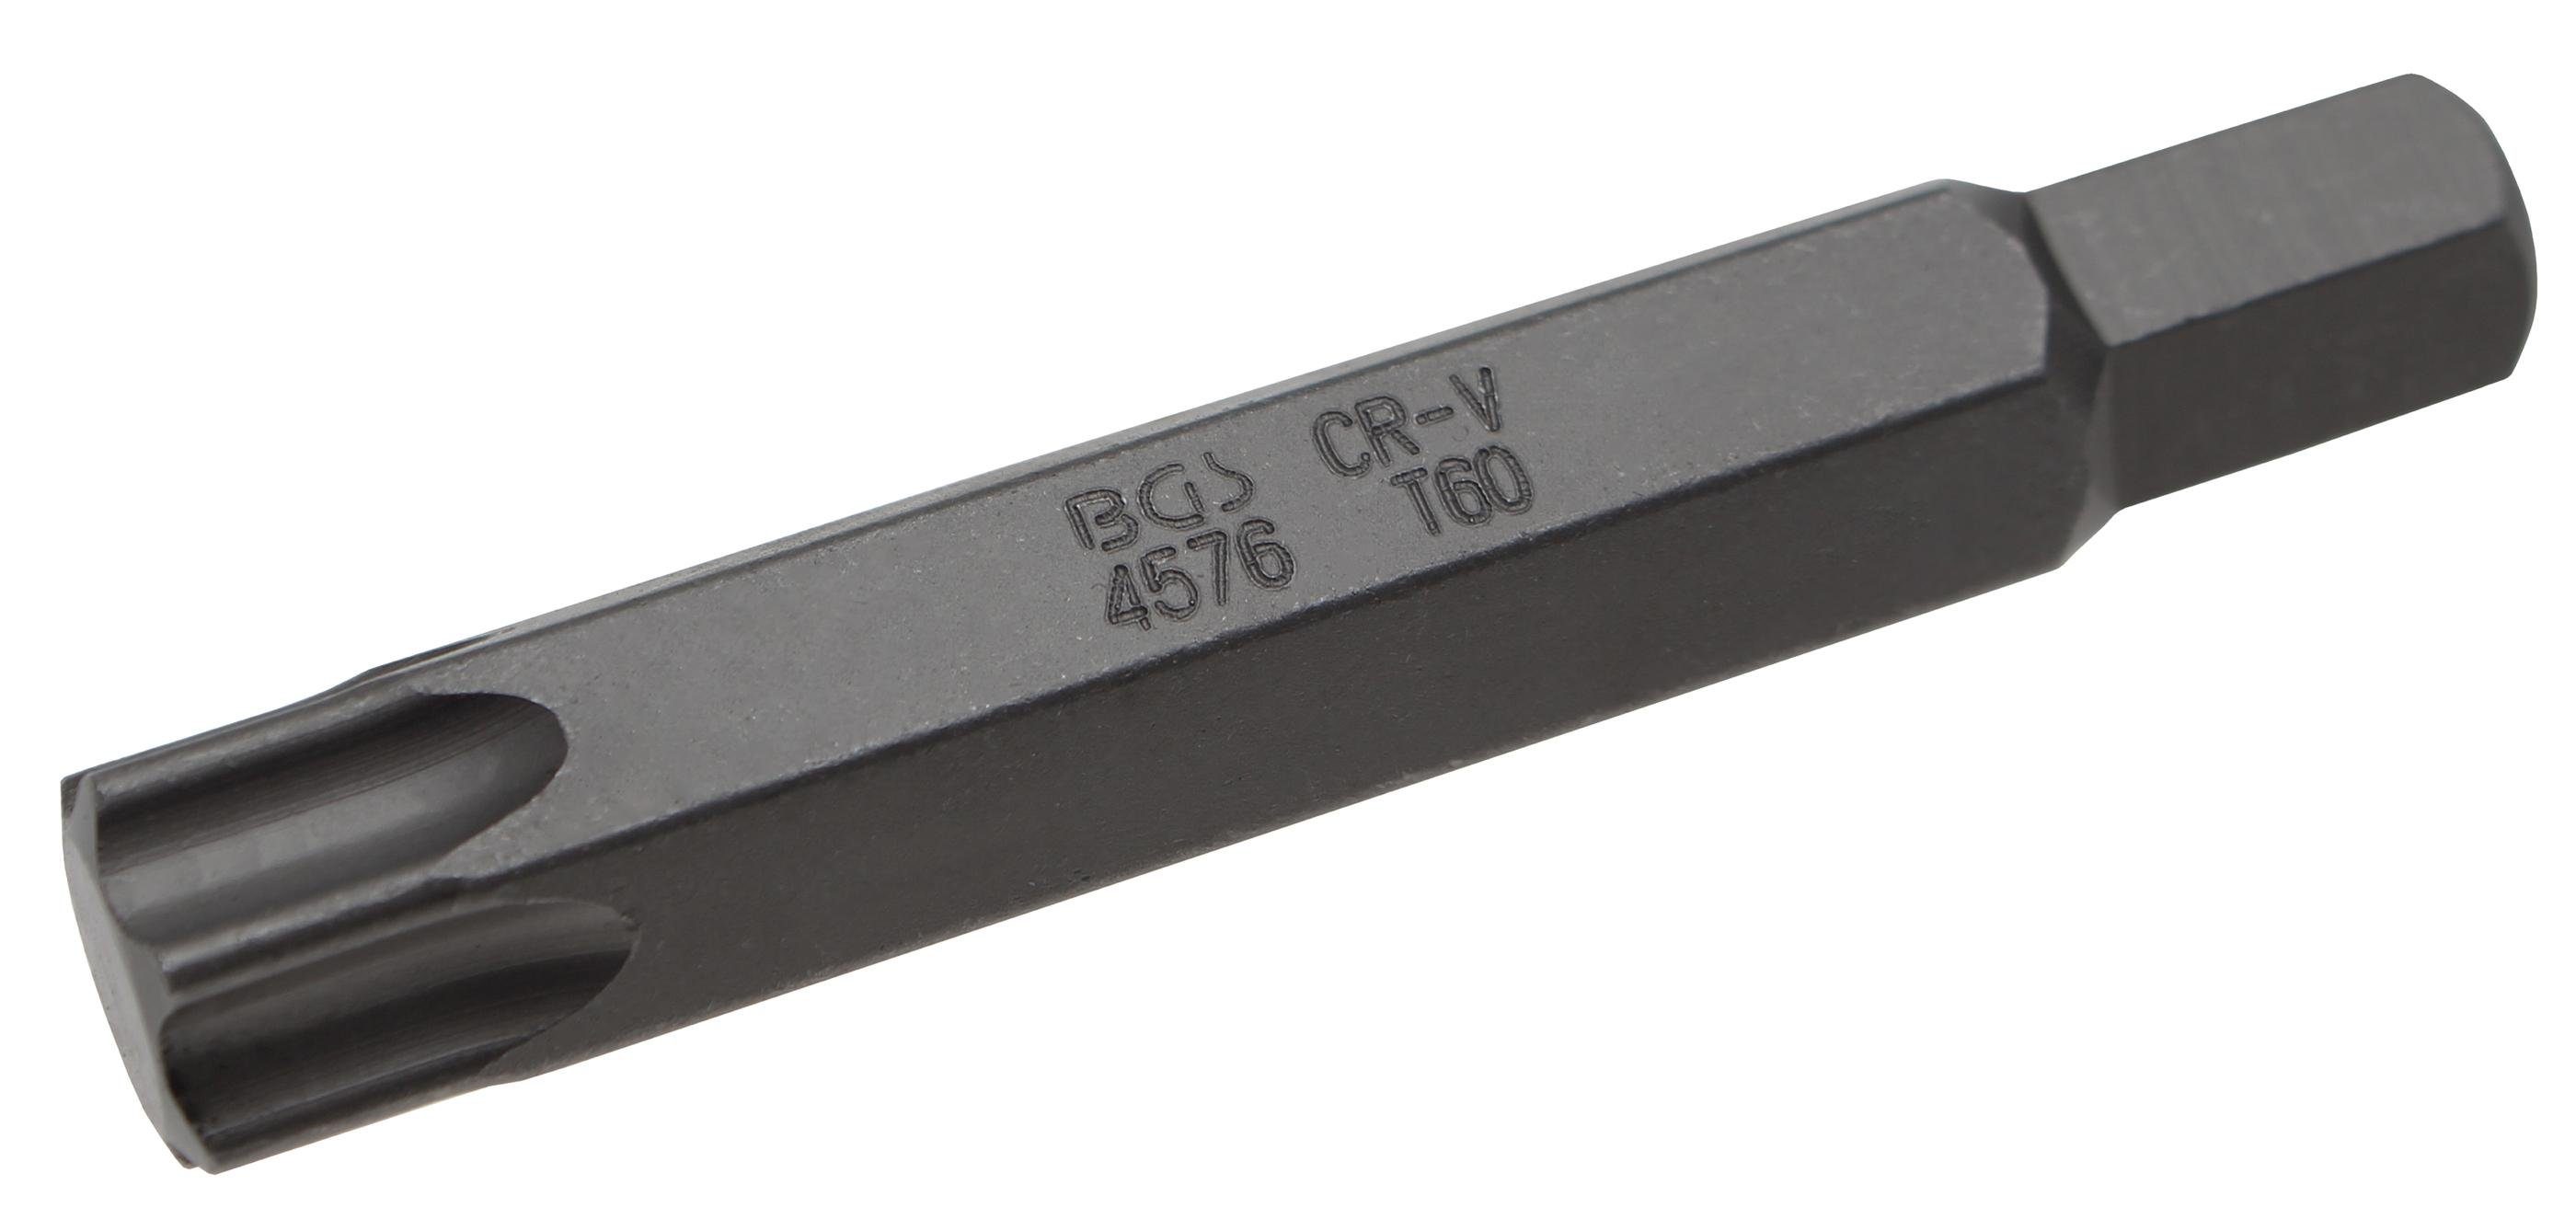 BGS technic Bit-Schraubendreher Bit, Länge 75 mm, Antrieb Außensechskant 10 mm, T-Profil (für Torx) T60